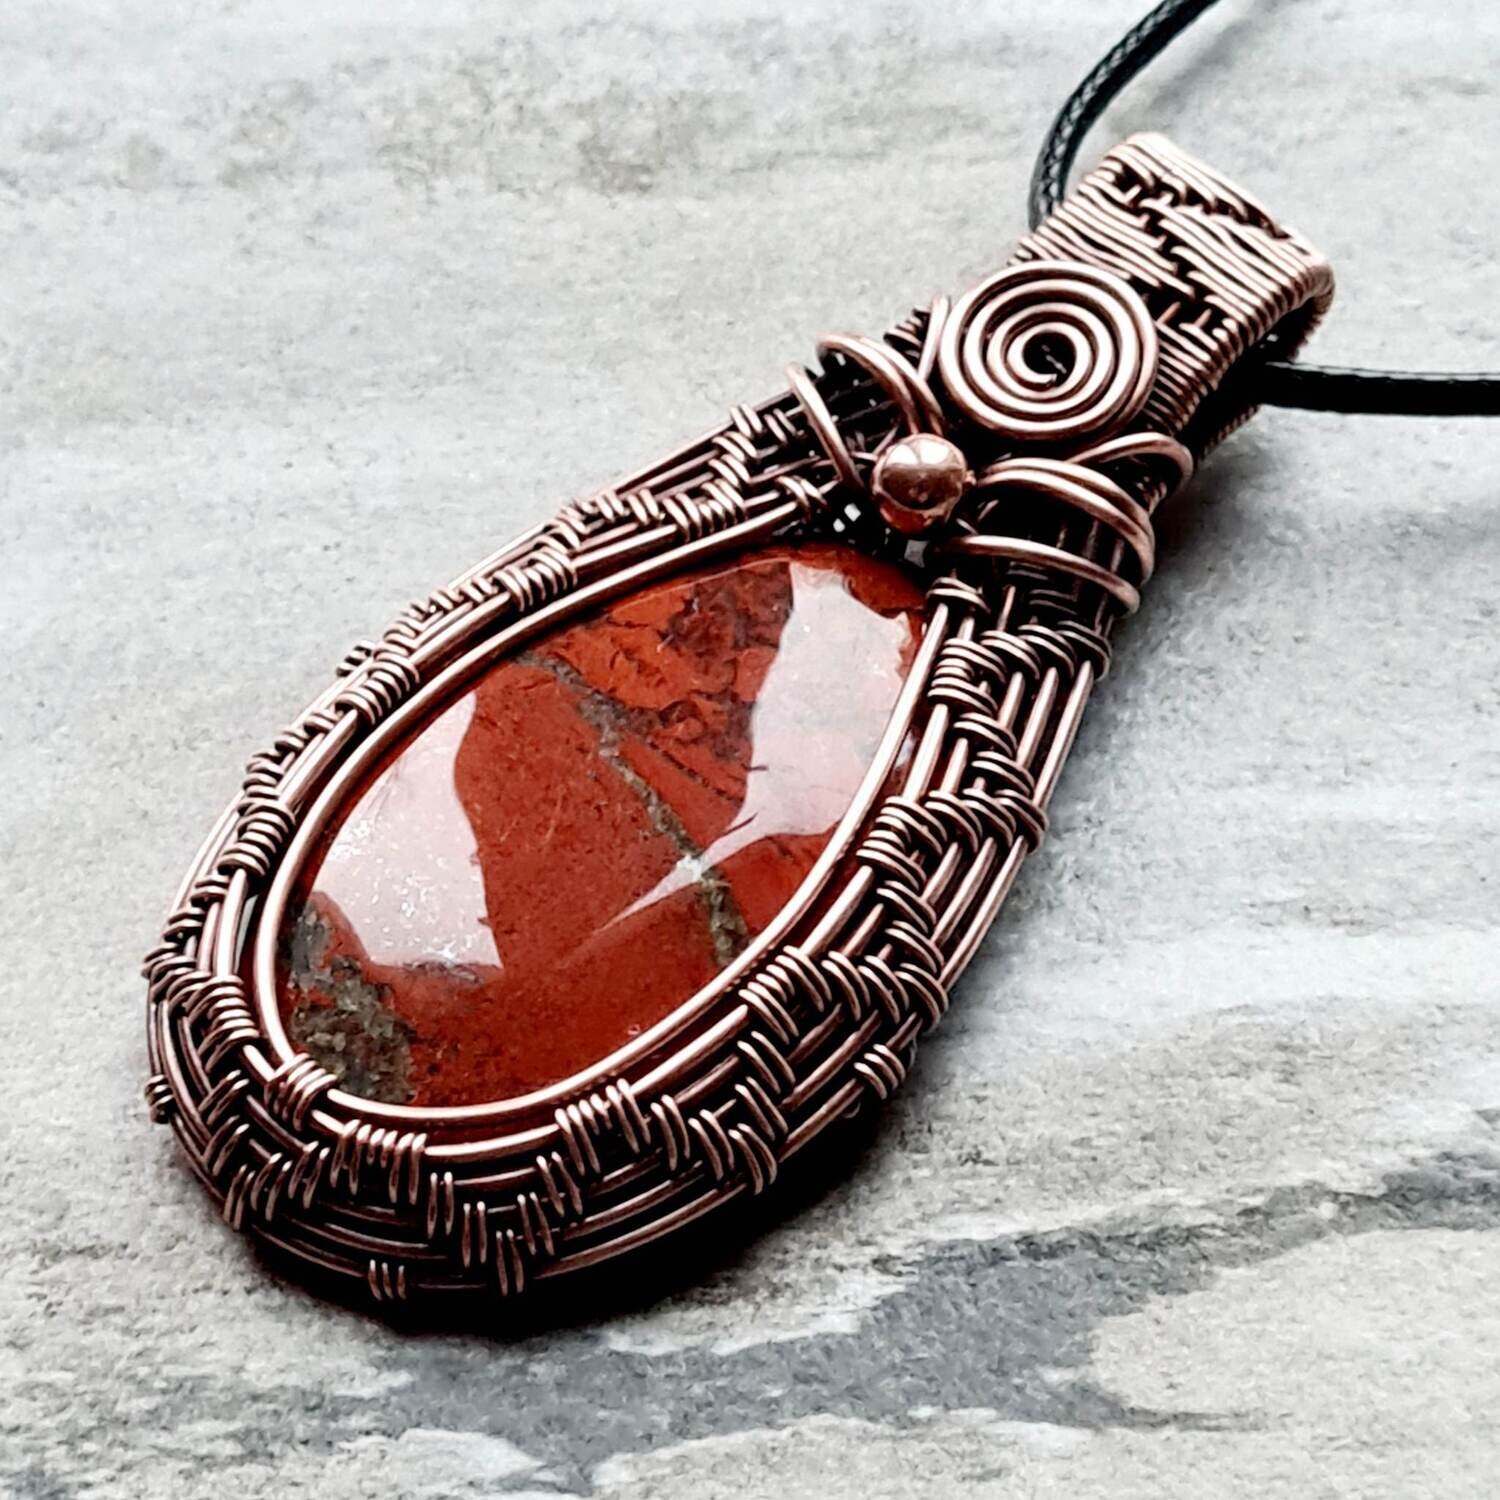 Brecciated Jasper pendant with chain.